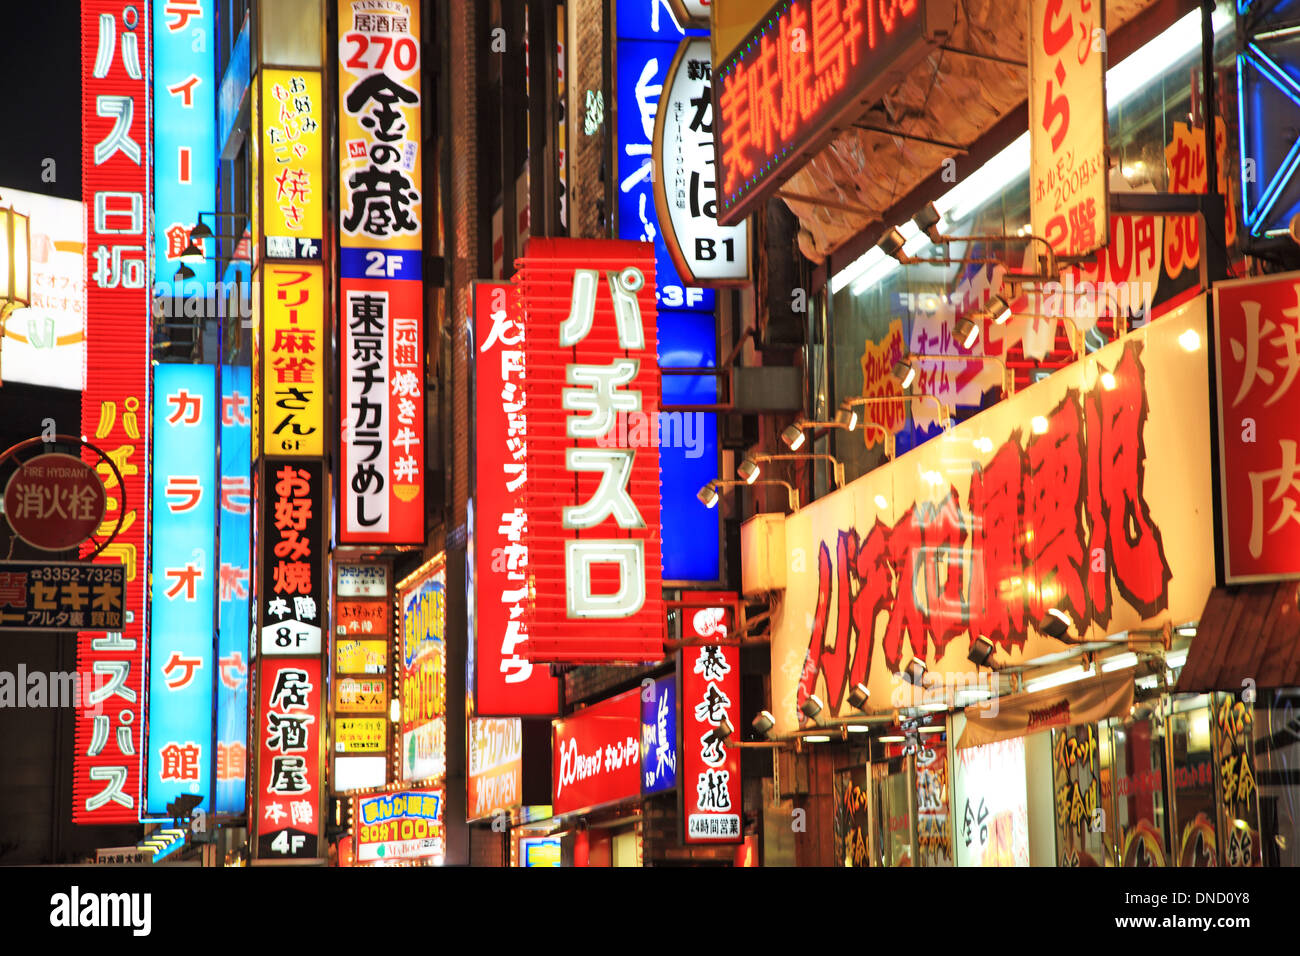 Japan, Tokyo, Shinjuku, Kabukicho at night Stock Photo